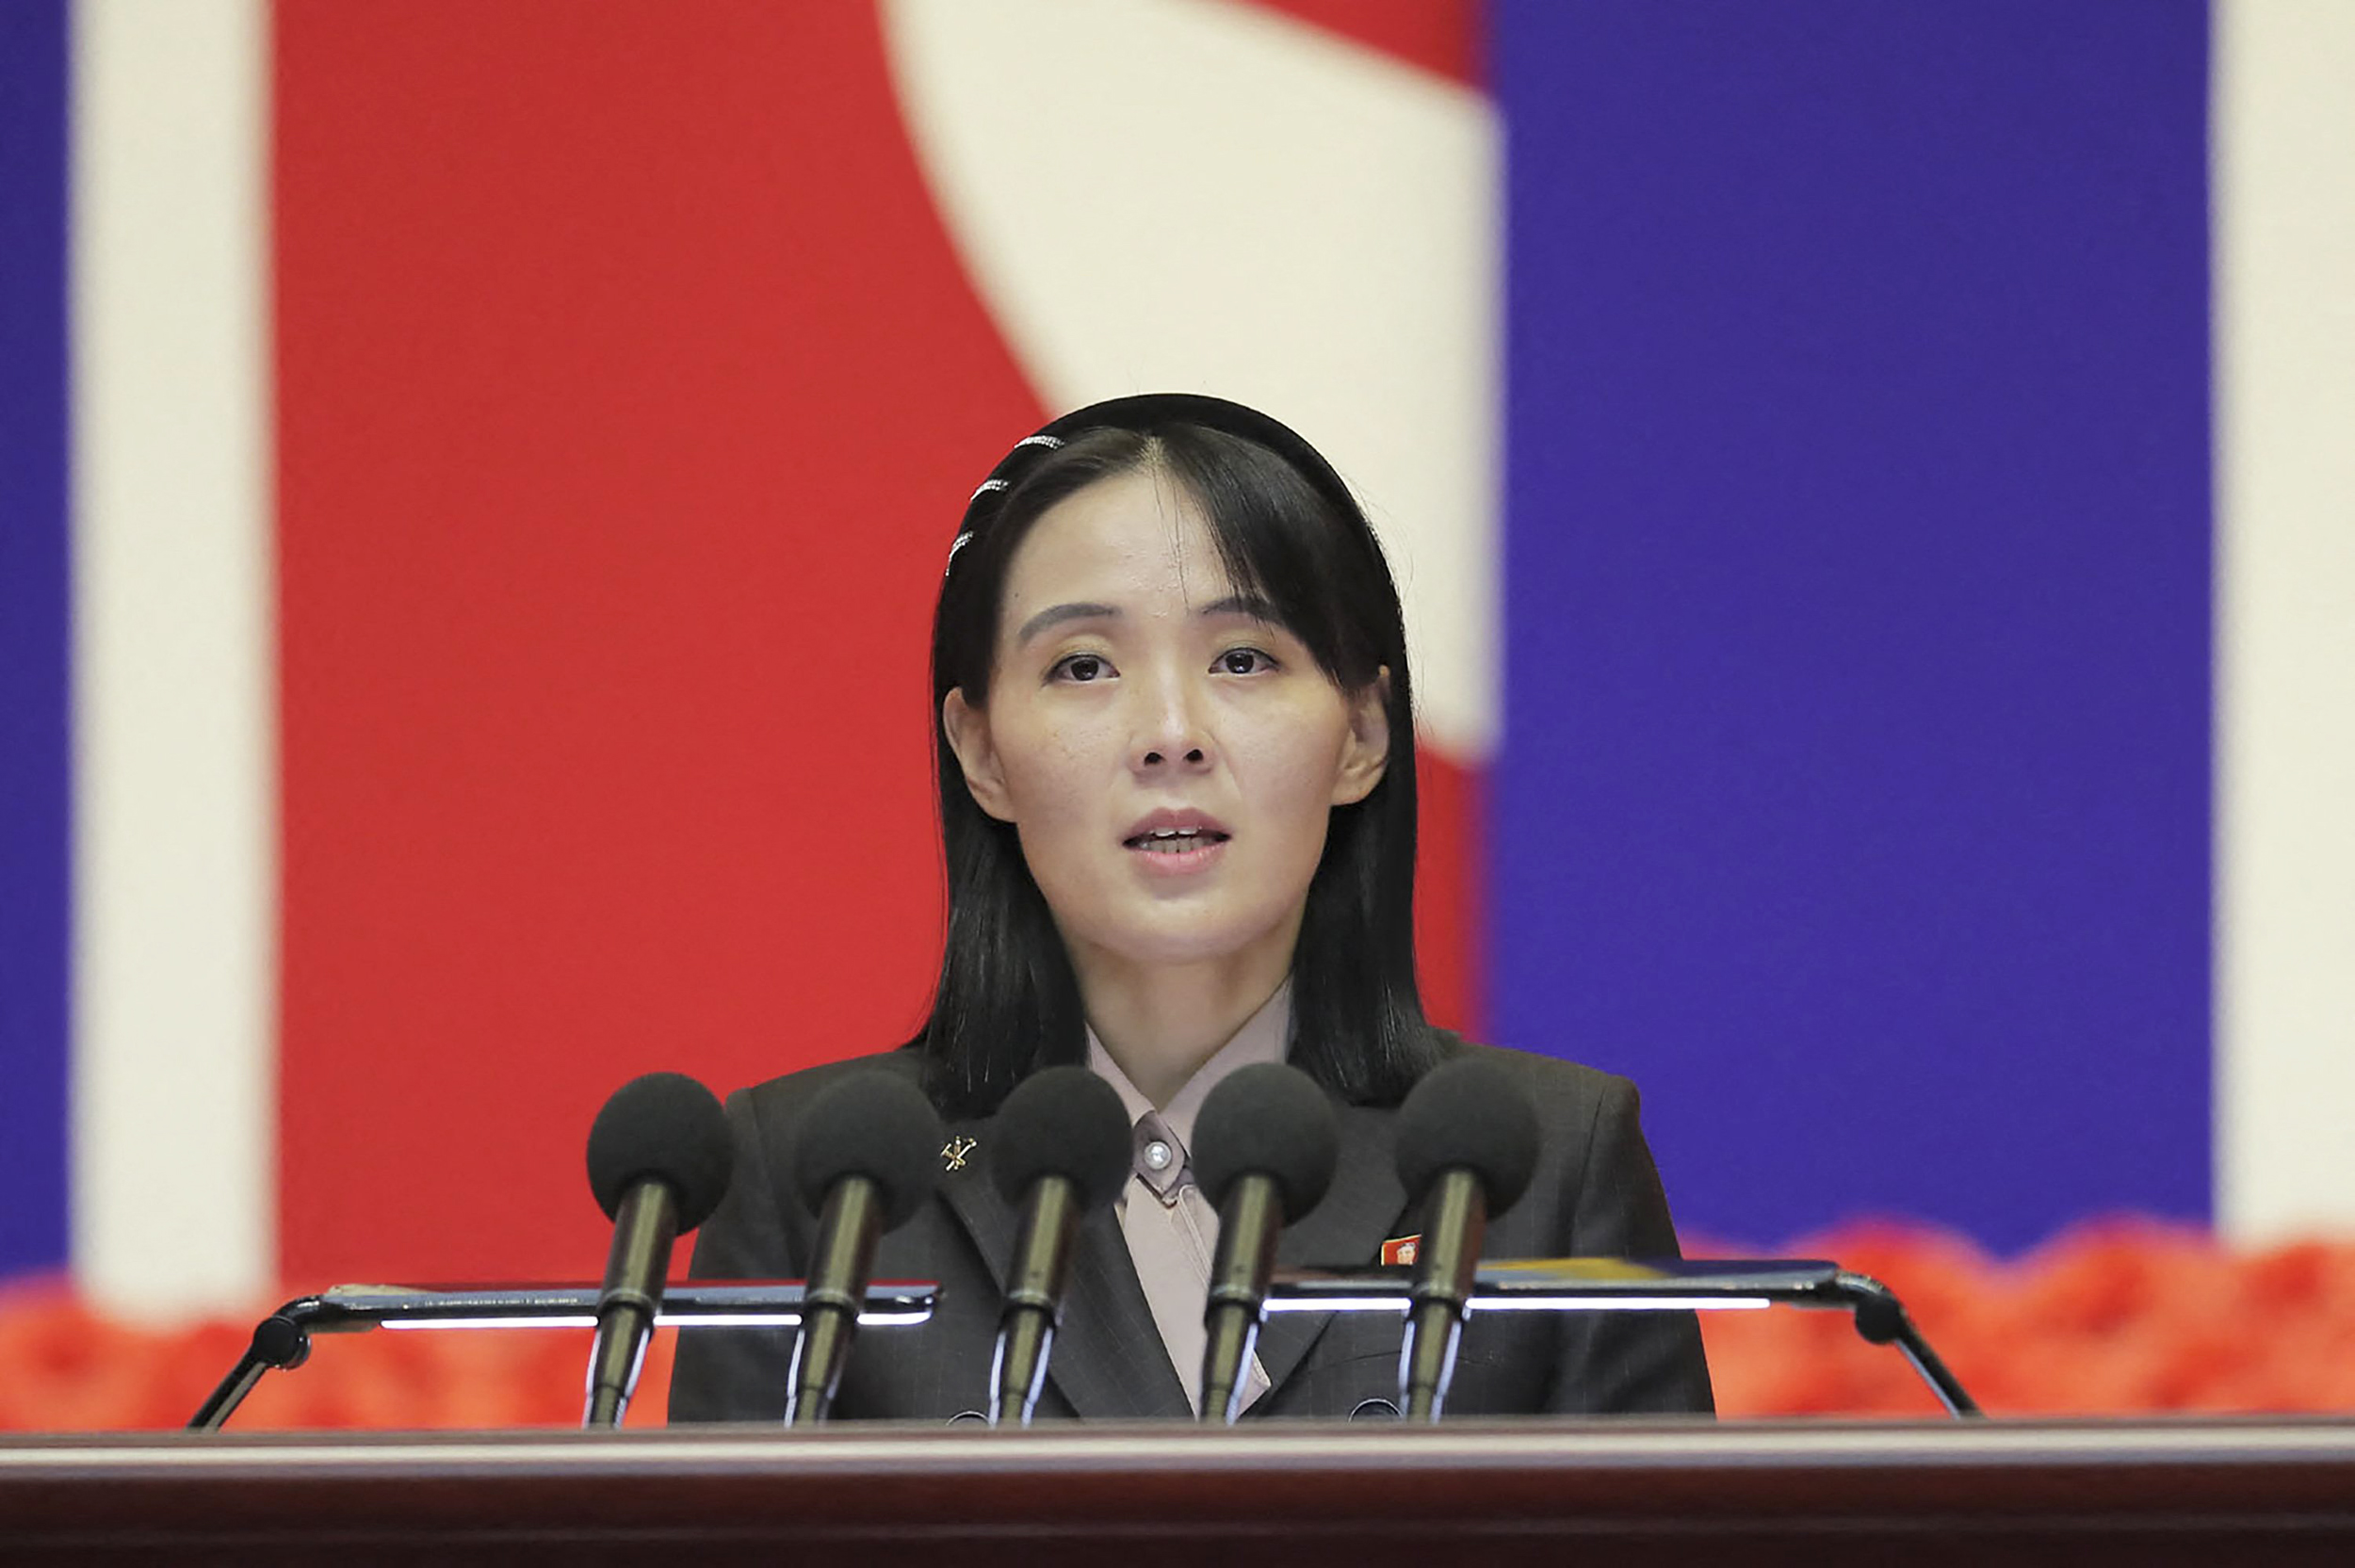  Bà Kim Yo Jong - em gái của Chủ tịch Triều Tiên Kim Jong-un